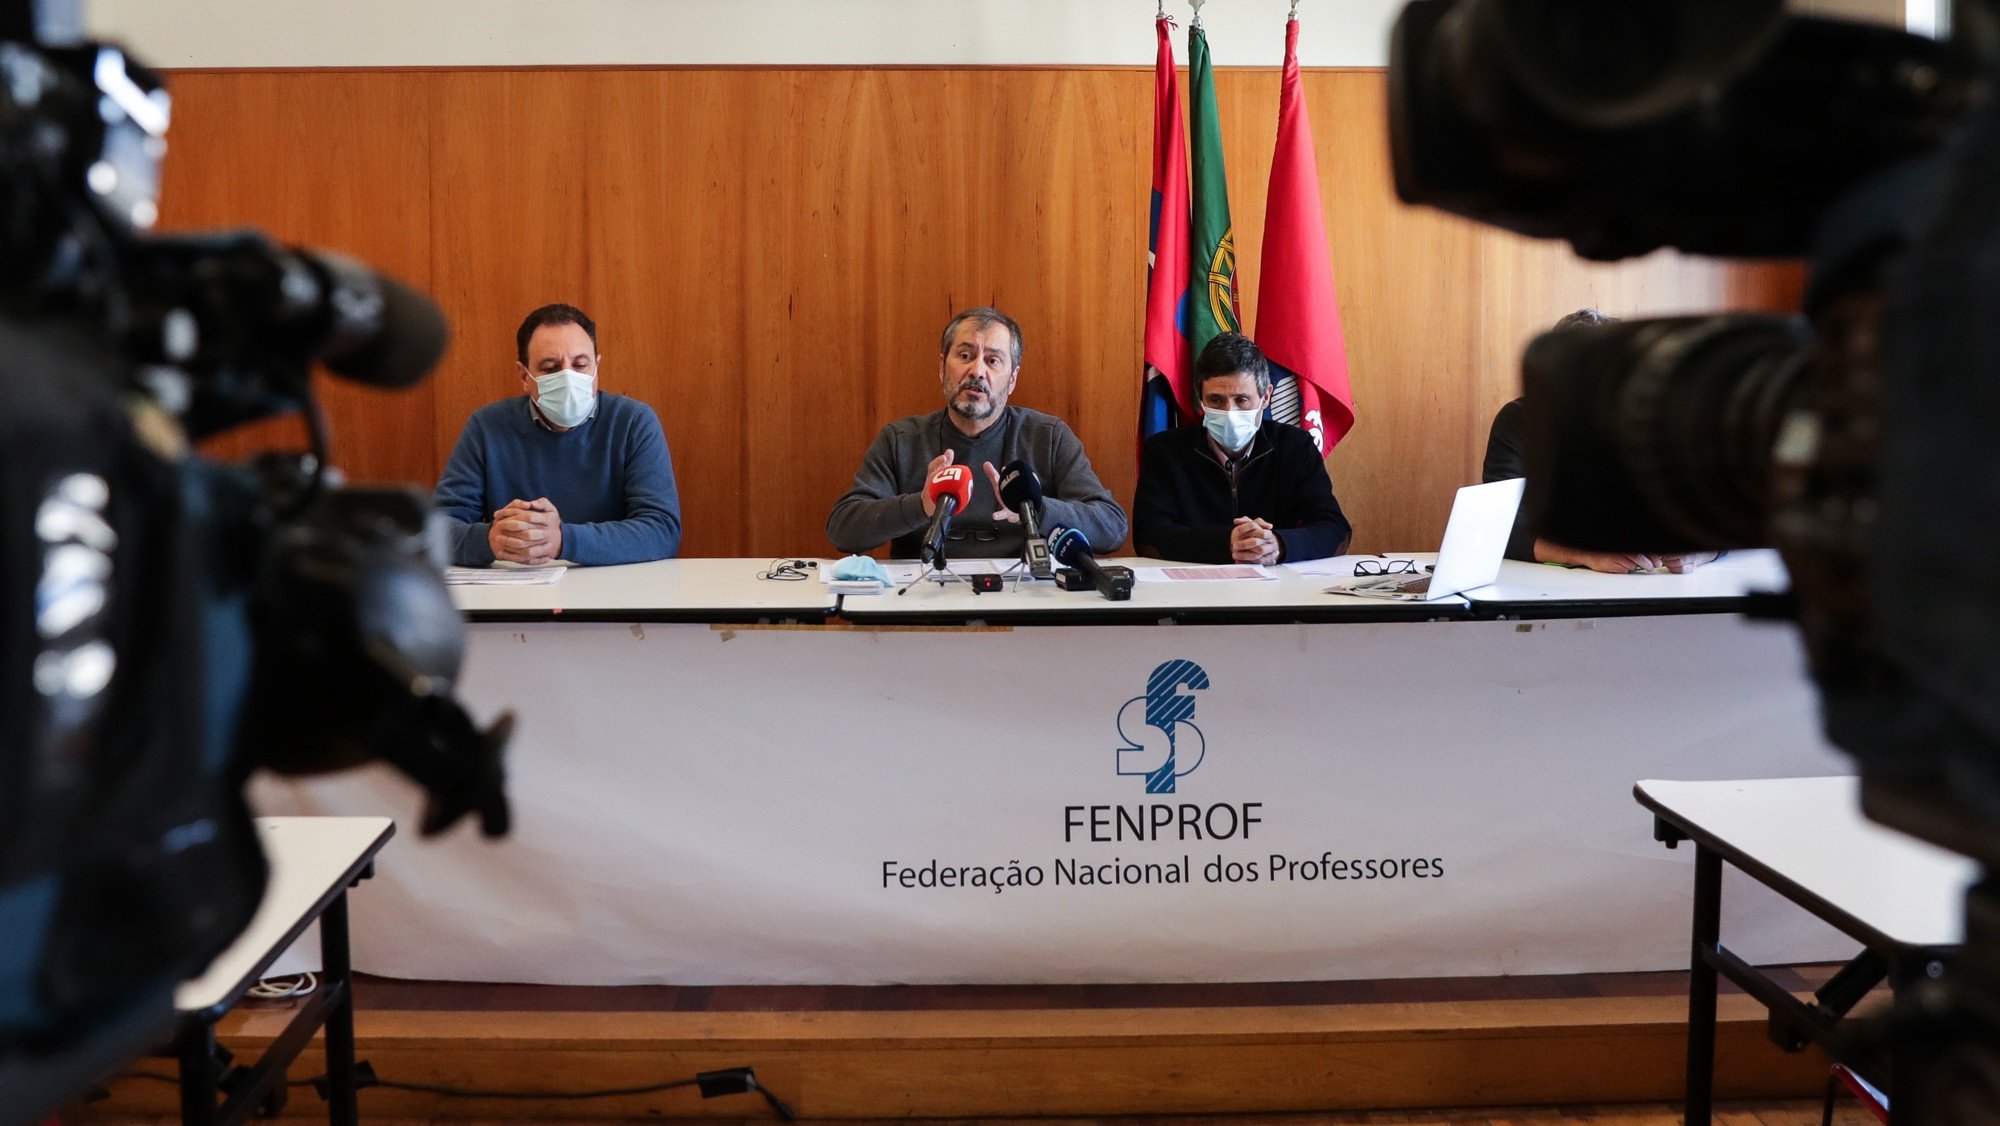 O secretário-geral da FENPROF, Mário Nogueira, fala numa conferência de imprensa sobre a questão da falta de professores, na sede em Lisboa, 18 de novembro 2021. TIAGO PETINGA/LUSA